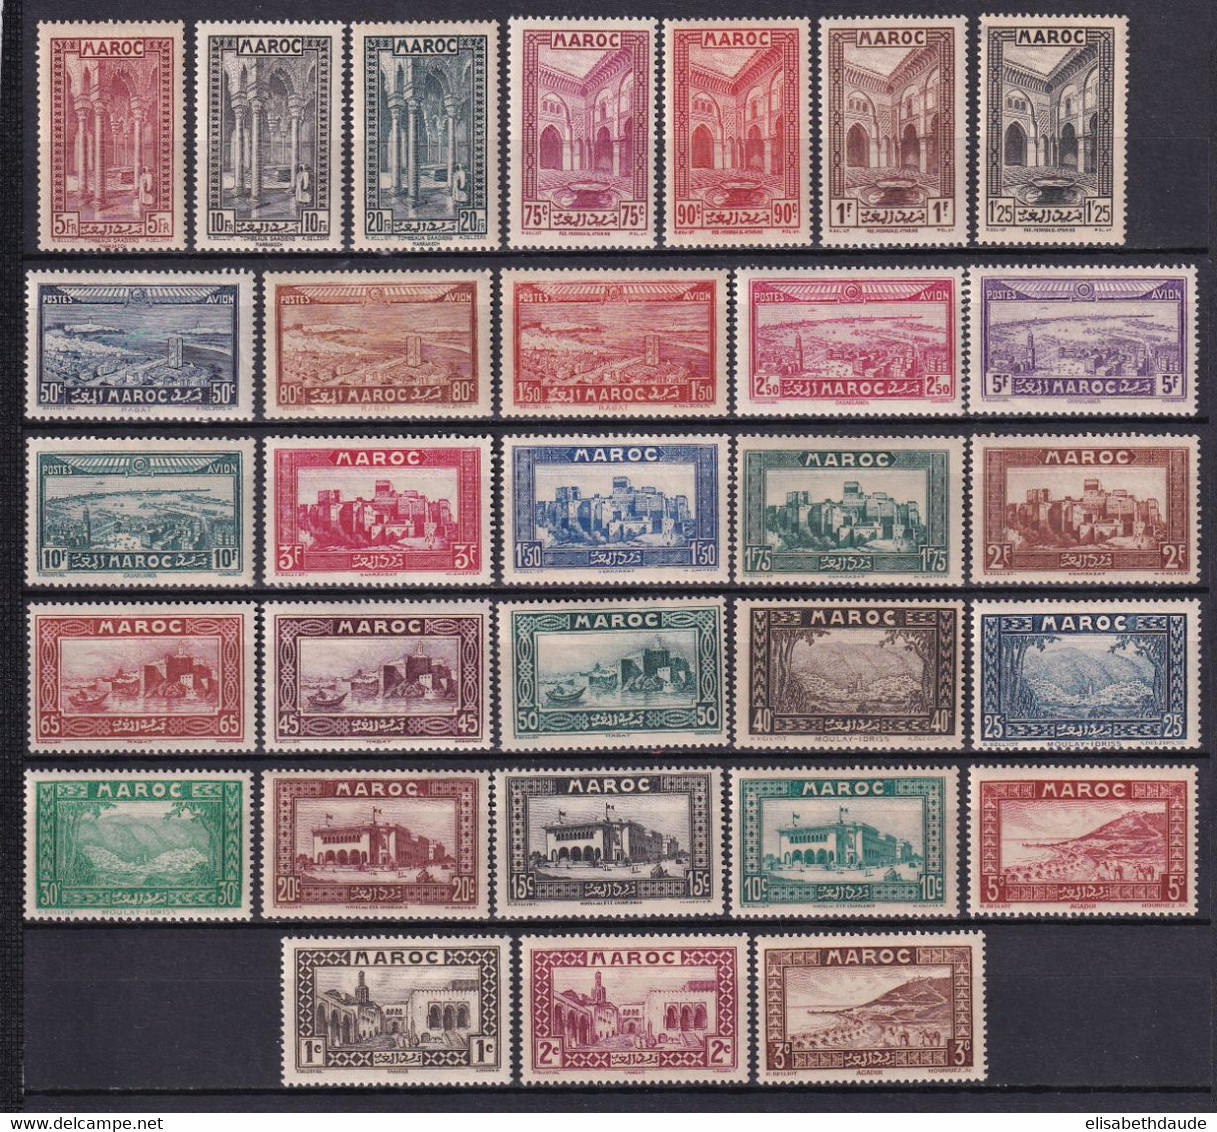 MAROC - 1933 - ANNEE COMPLETE AVEC POSTE AERIENNE - YVERT N° 128/149 + PA 34/39 * MLH - COTE = 144.5 EUR. - Unused Stamps